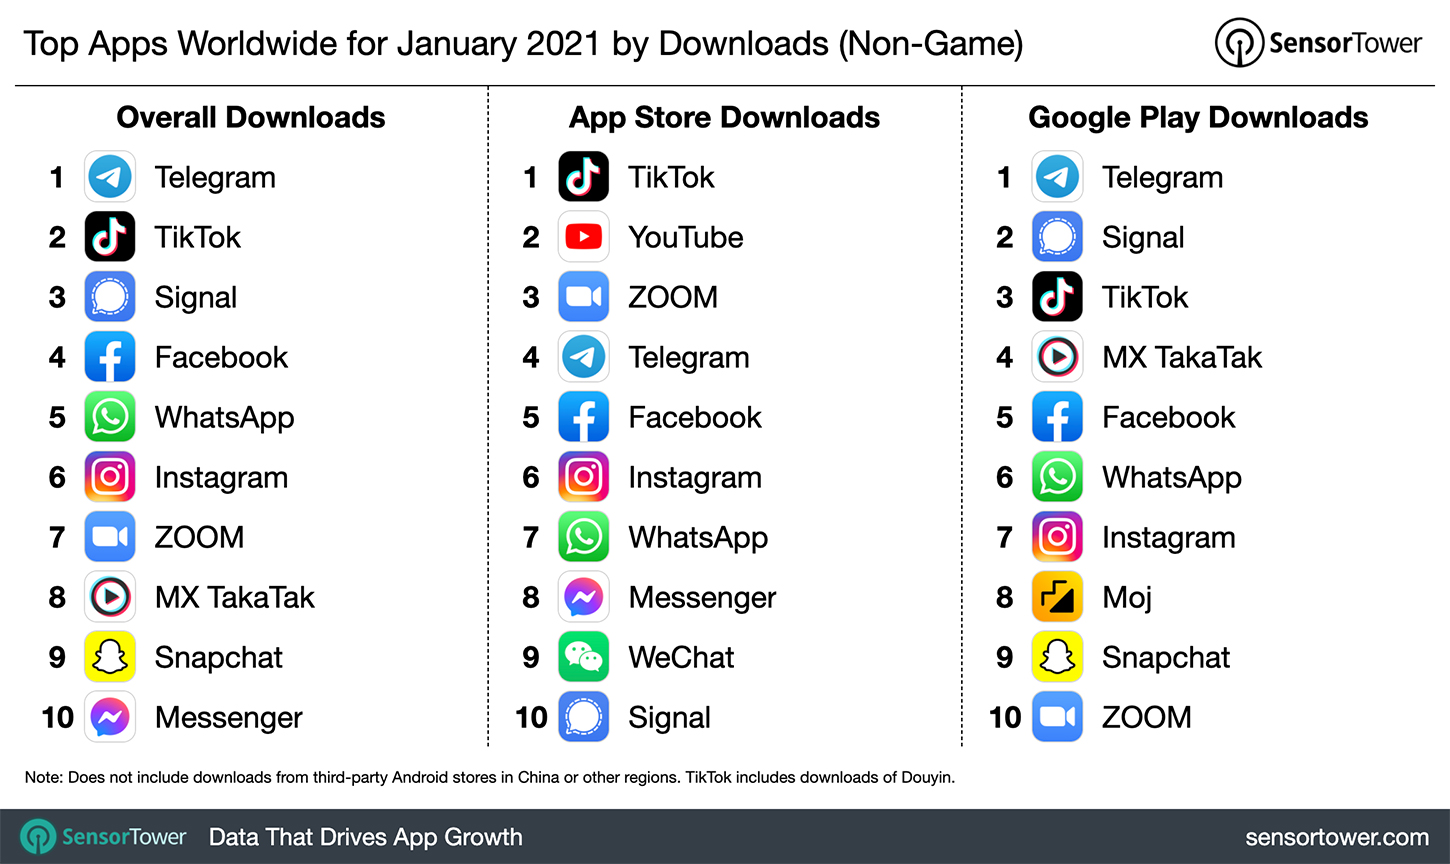 Telegram стал самым скачиваемым приложением в январе 2021 года, обогнав даже TikTok 1